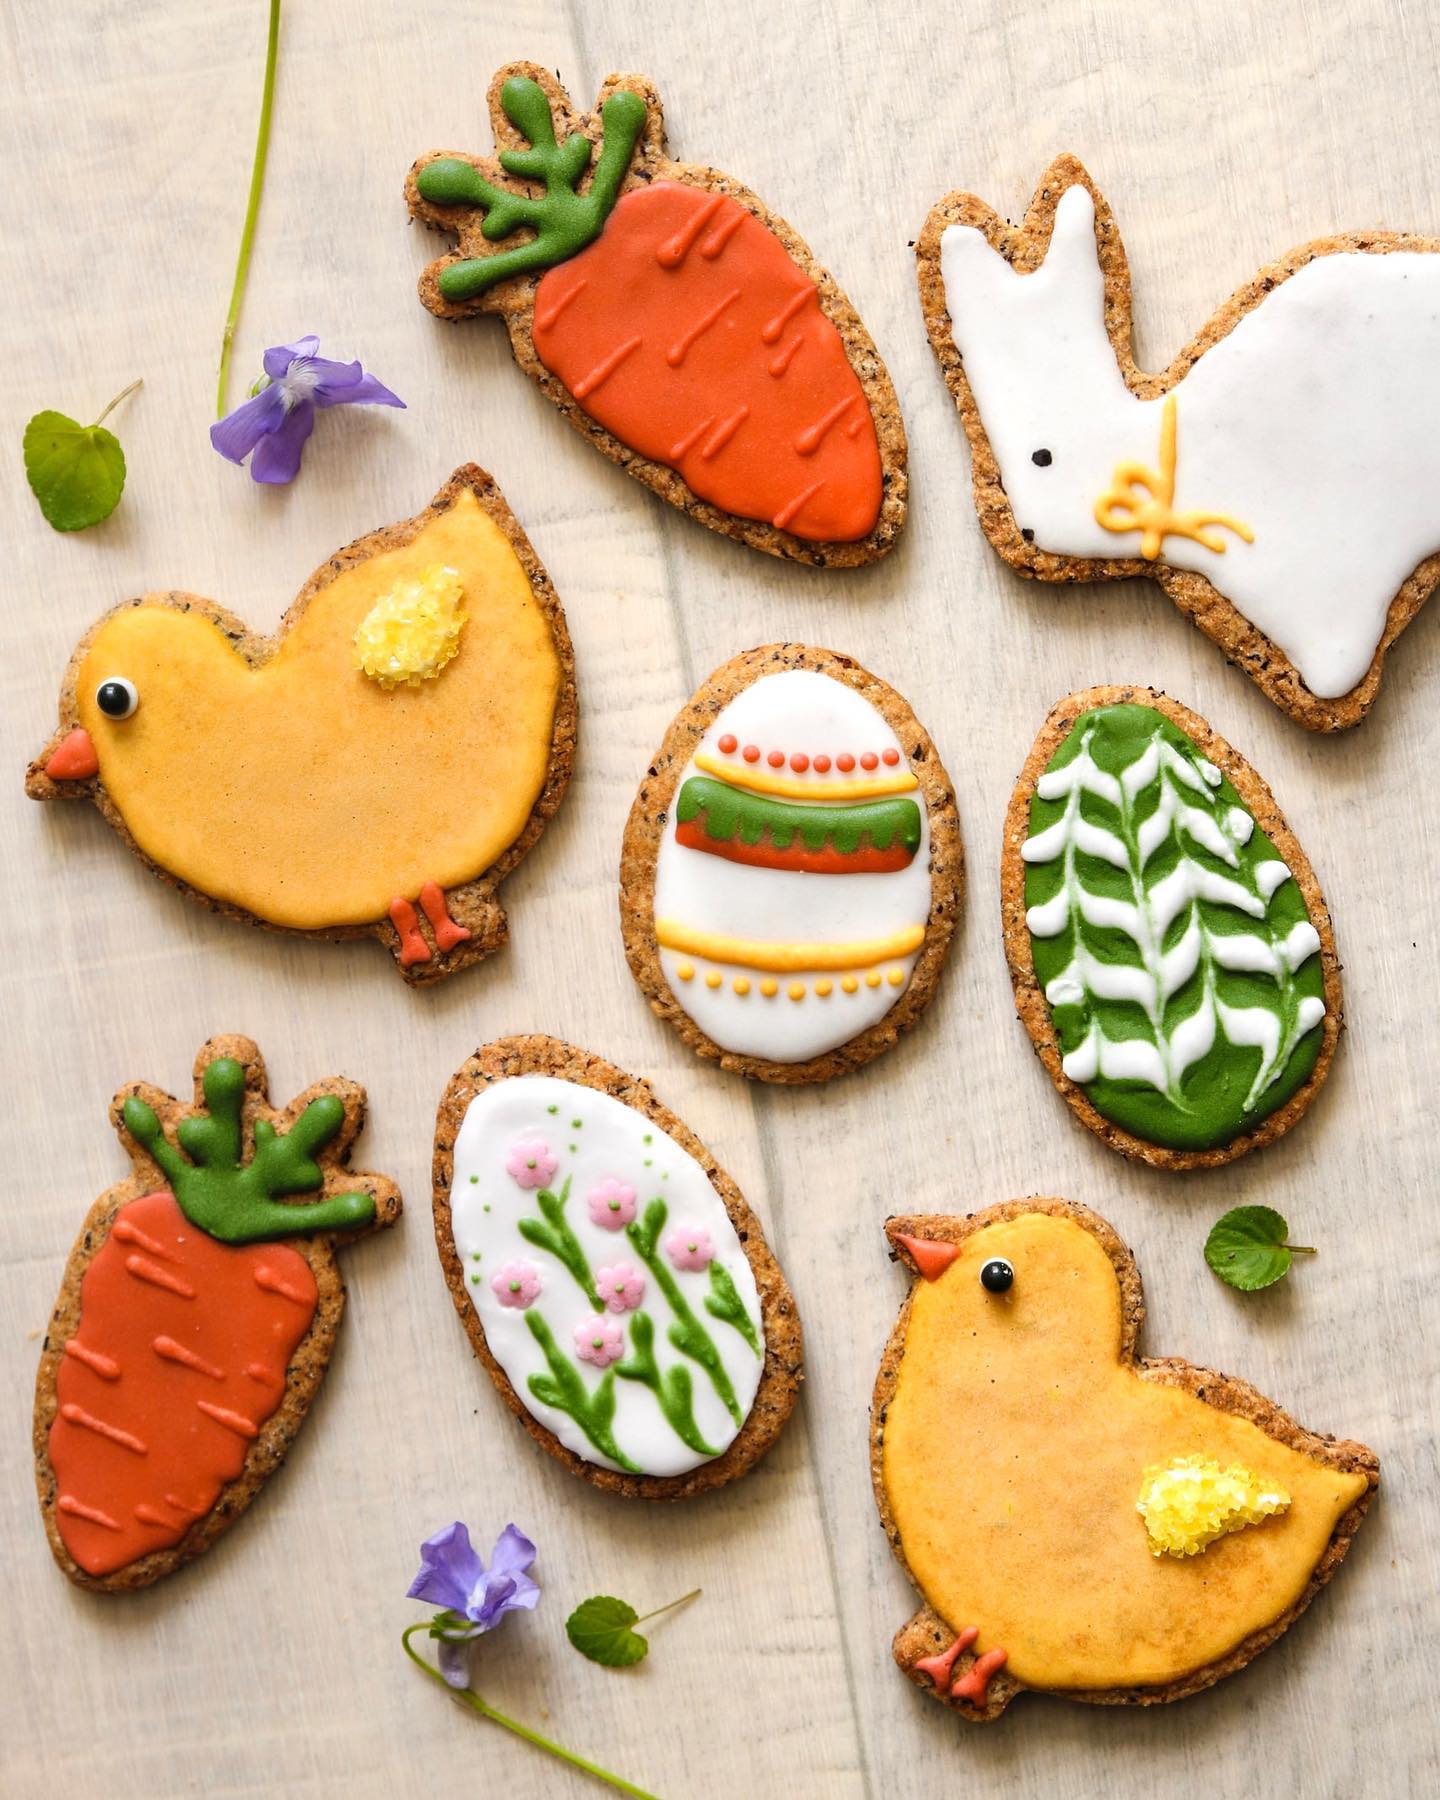 Joyeuses Pâques à tous.tes ! 🐣☀️ et pour fêter ça : des biscuits au sarrasin, avec un glaçage au sucre, que j’ai décoré dans le thème 🥳

Belle journée ☀️
… PS : je vous partage une vidéo dès demain, pour vous montrer la décoration d’un des biscuits 🐰🖌

#joyeusespâques #paques2022 #biscuits #easterdecor #easterbiscuits #eastercookies #pâques #eastereggs #easterbunny #dimanchedepaques #sarrasin #farinedesarrasin